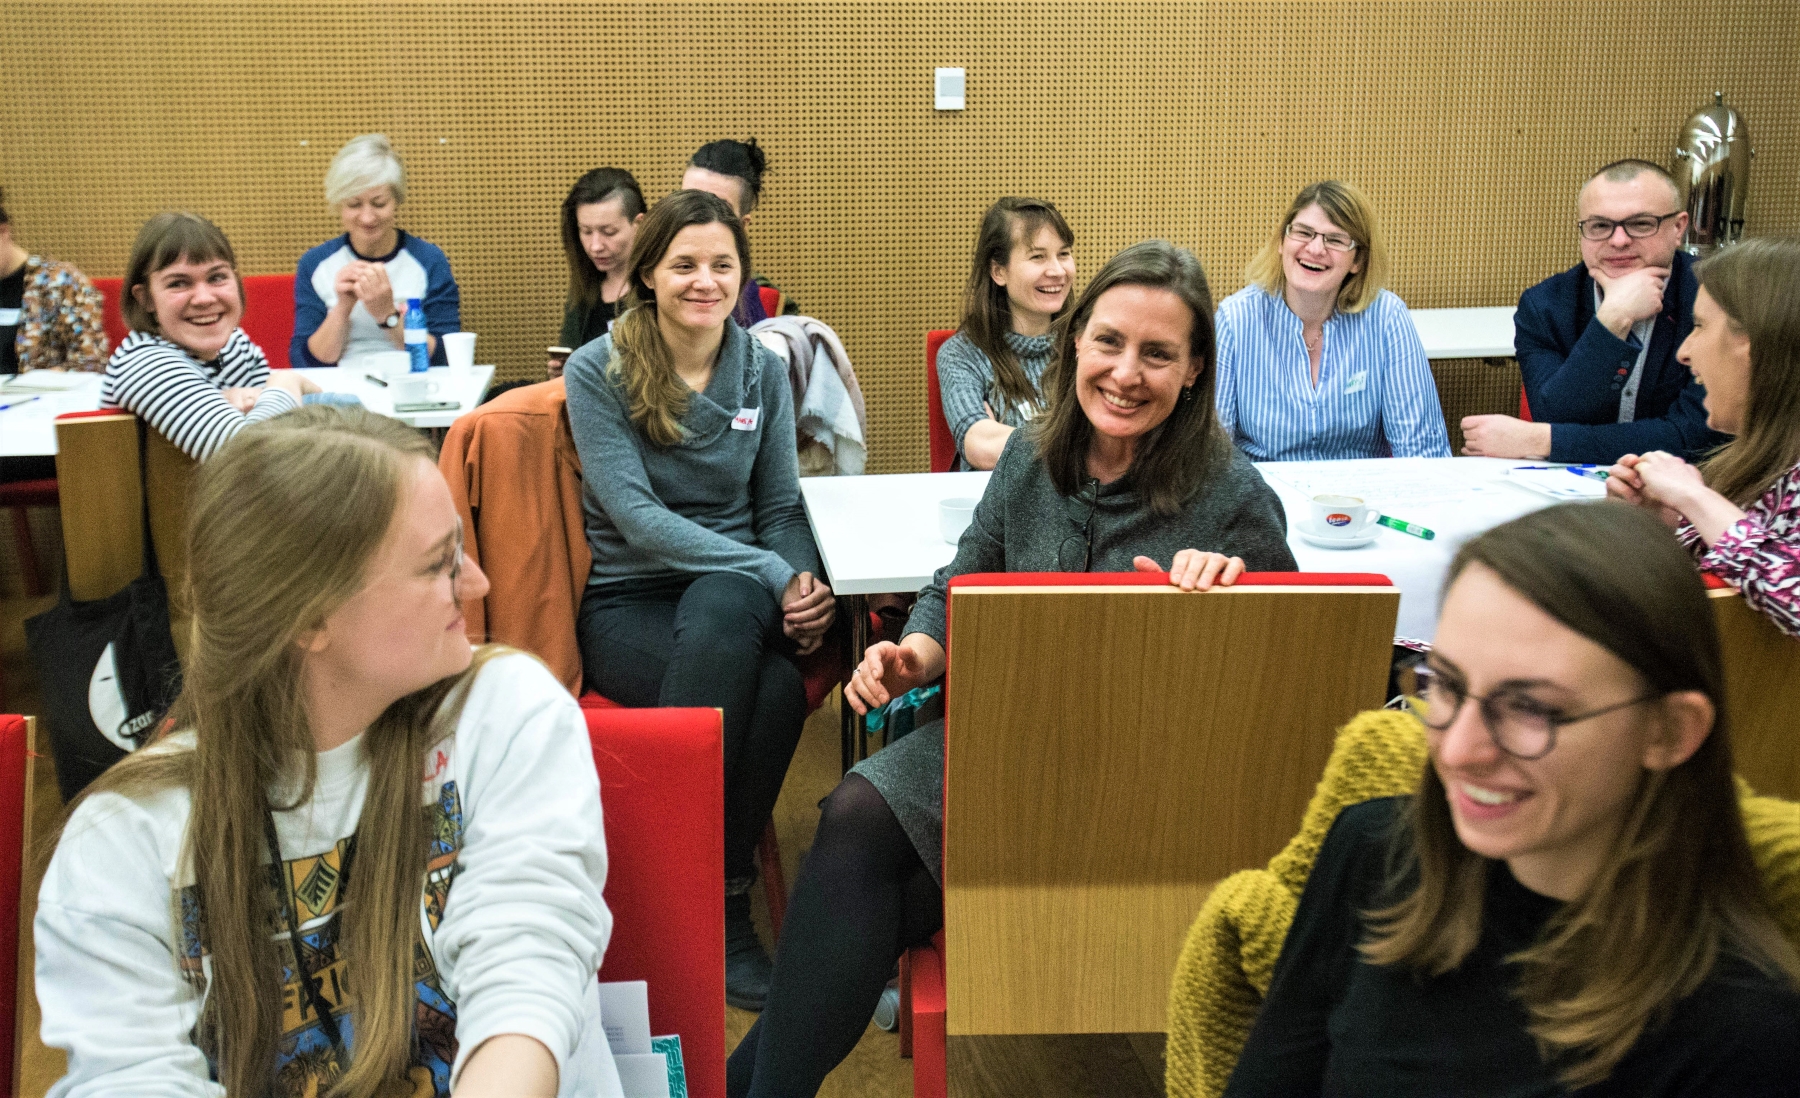 Grupa uśmiechniętych osób, głównie kobiet, siedzi na krzesłach w sali konferencyjnej w Muzeum POLIN.